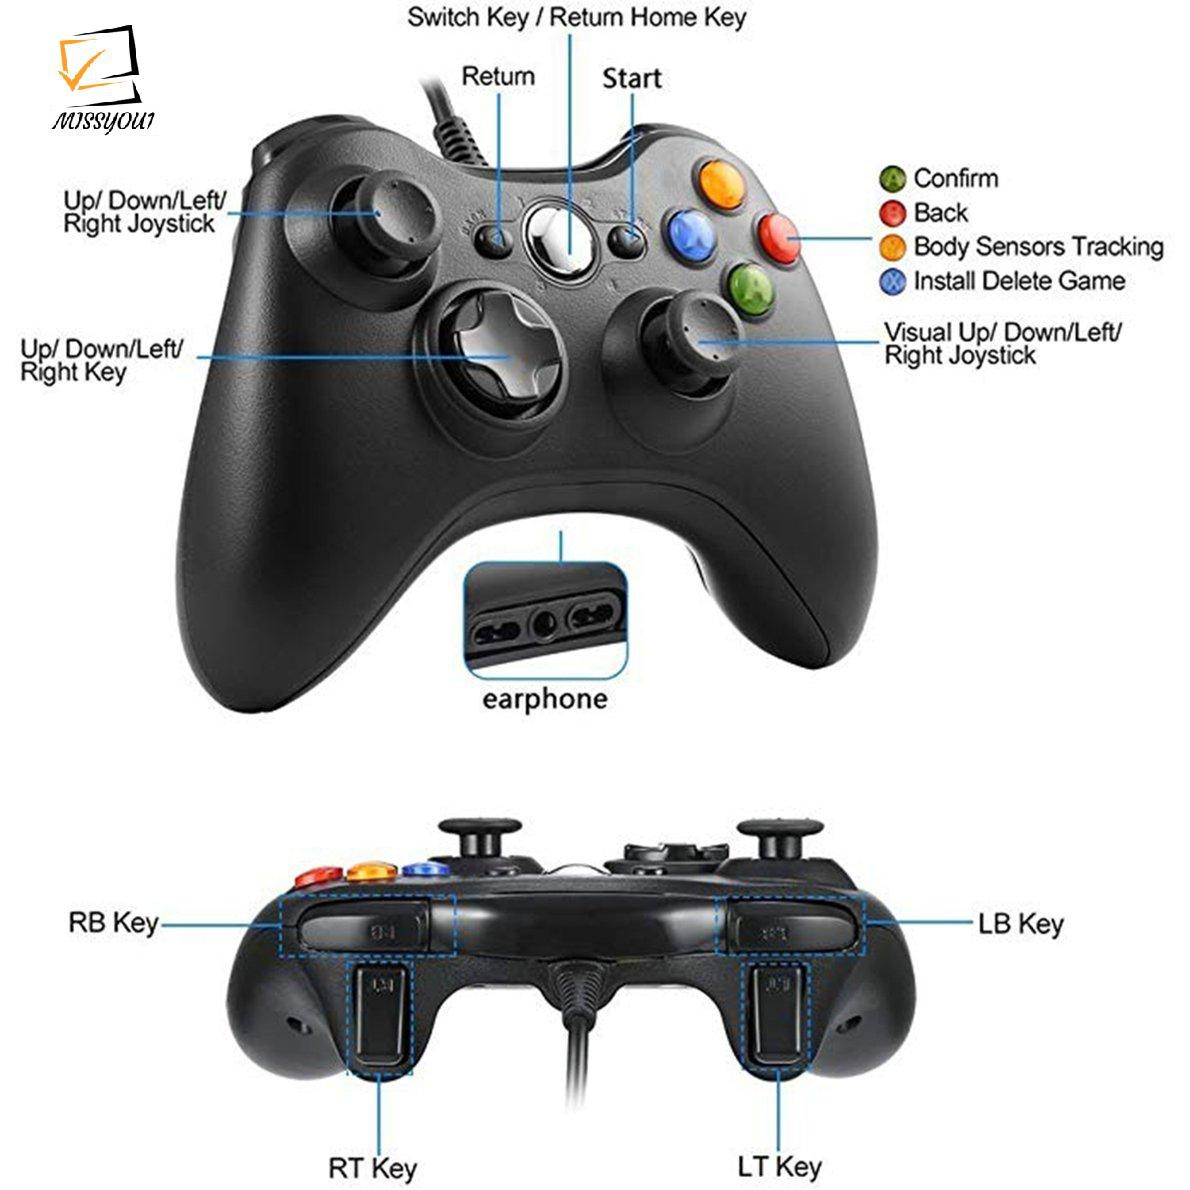 Tay Cầm Chơi Game Có Dây Kết Nối Usb Cho Microsoft Xbox 360